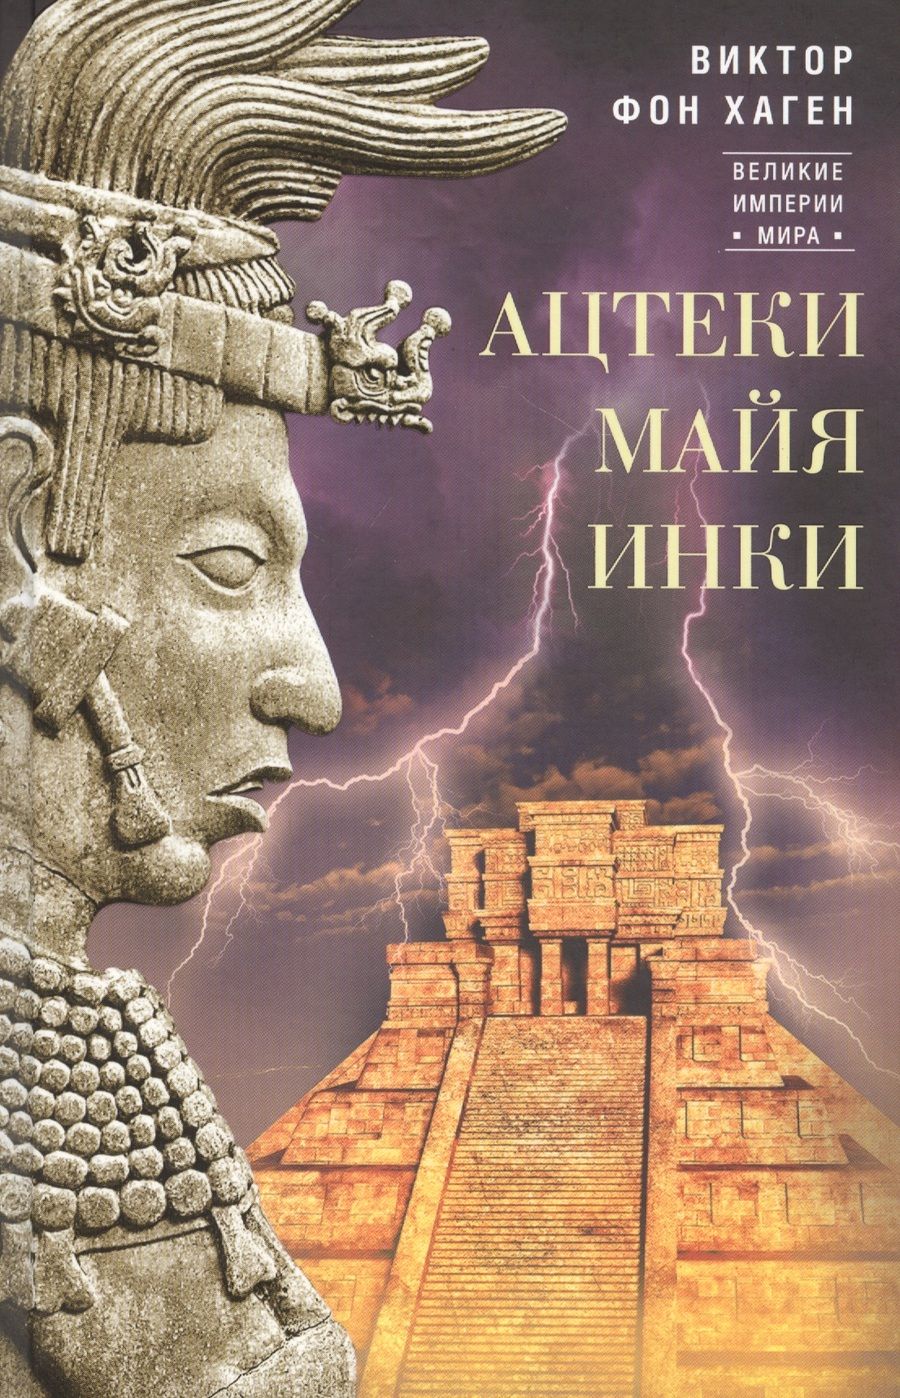 Обложка книги "Виктор Хаген: Ацтеки, майя, инки. Великие царства древней Америки"